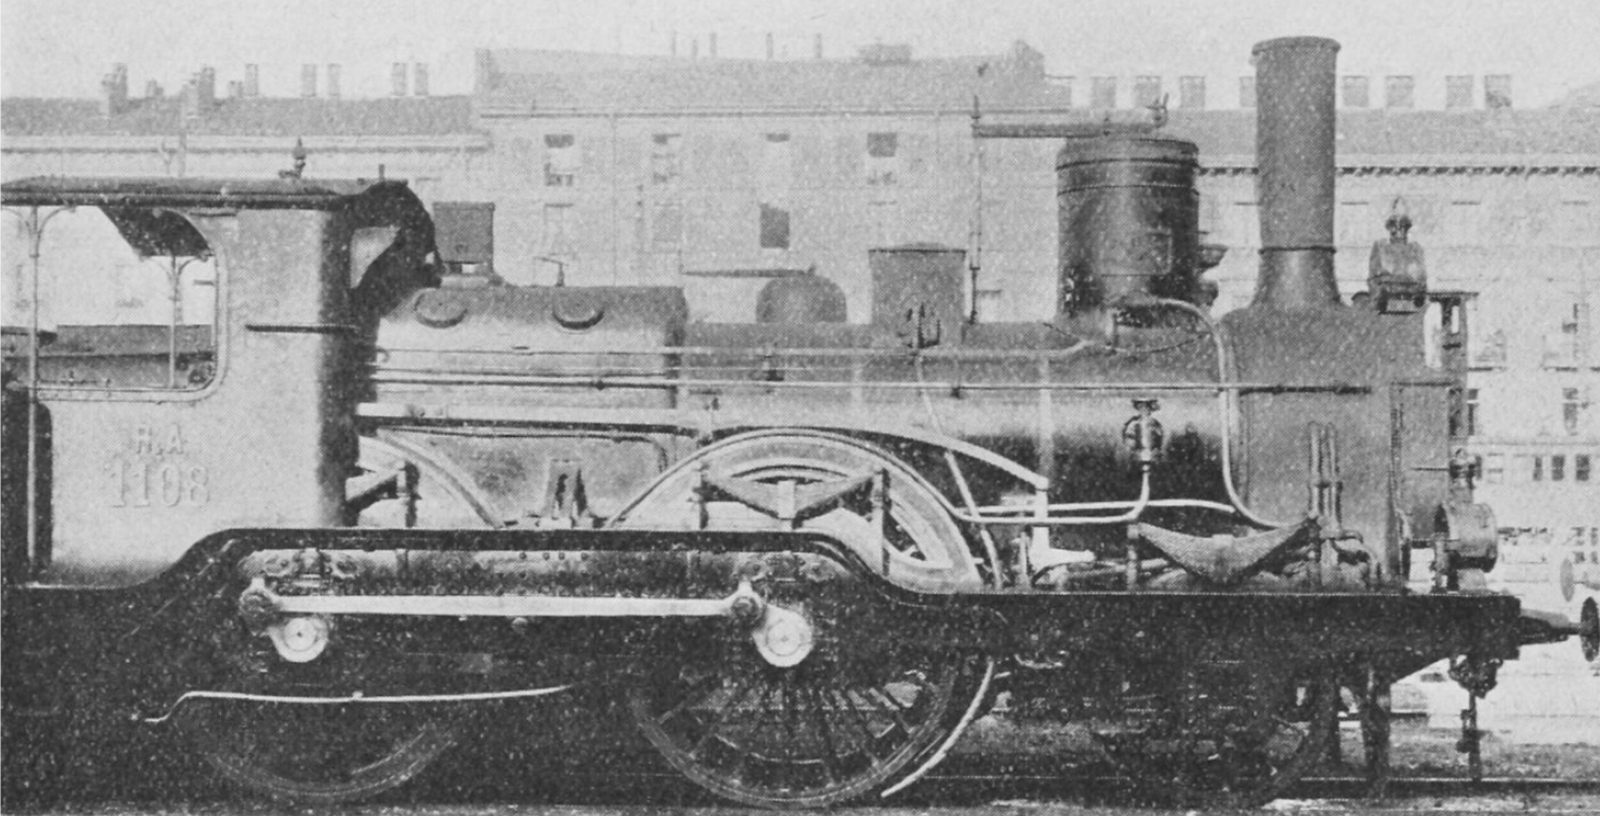 RA No. 1108, ex No. 39 “Cometa”, after being rebuilt as 2-4-0